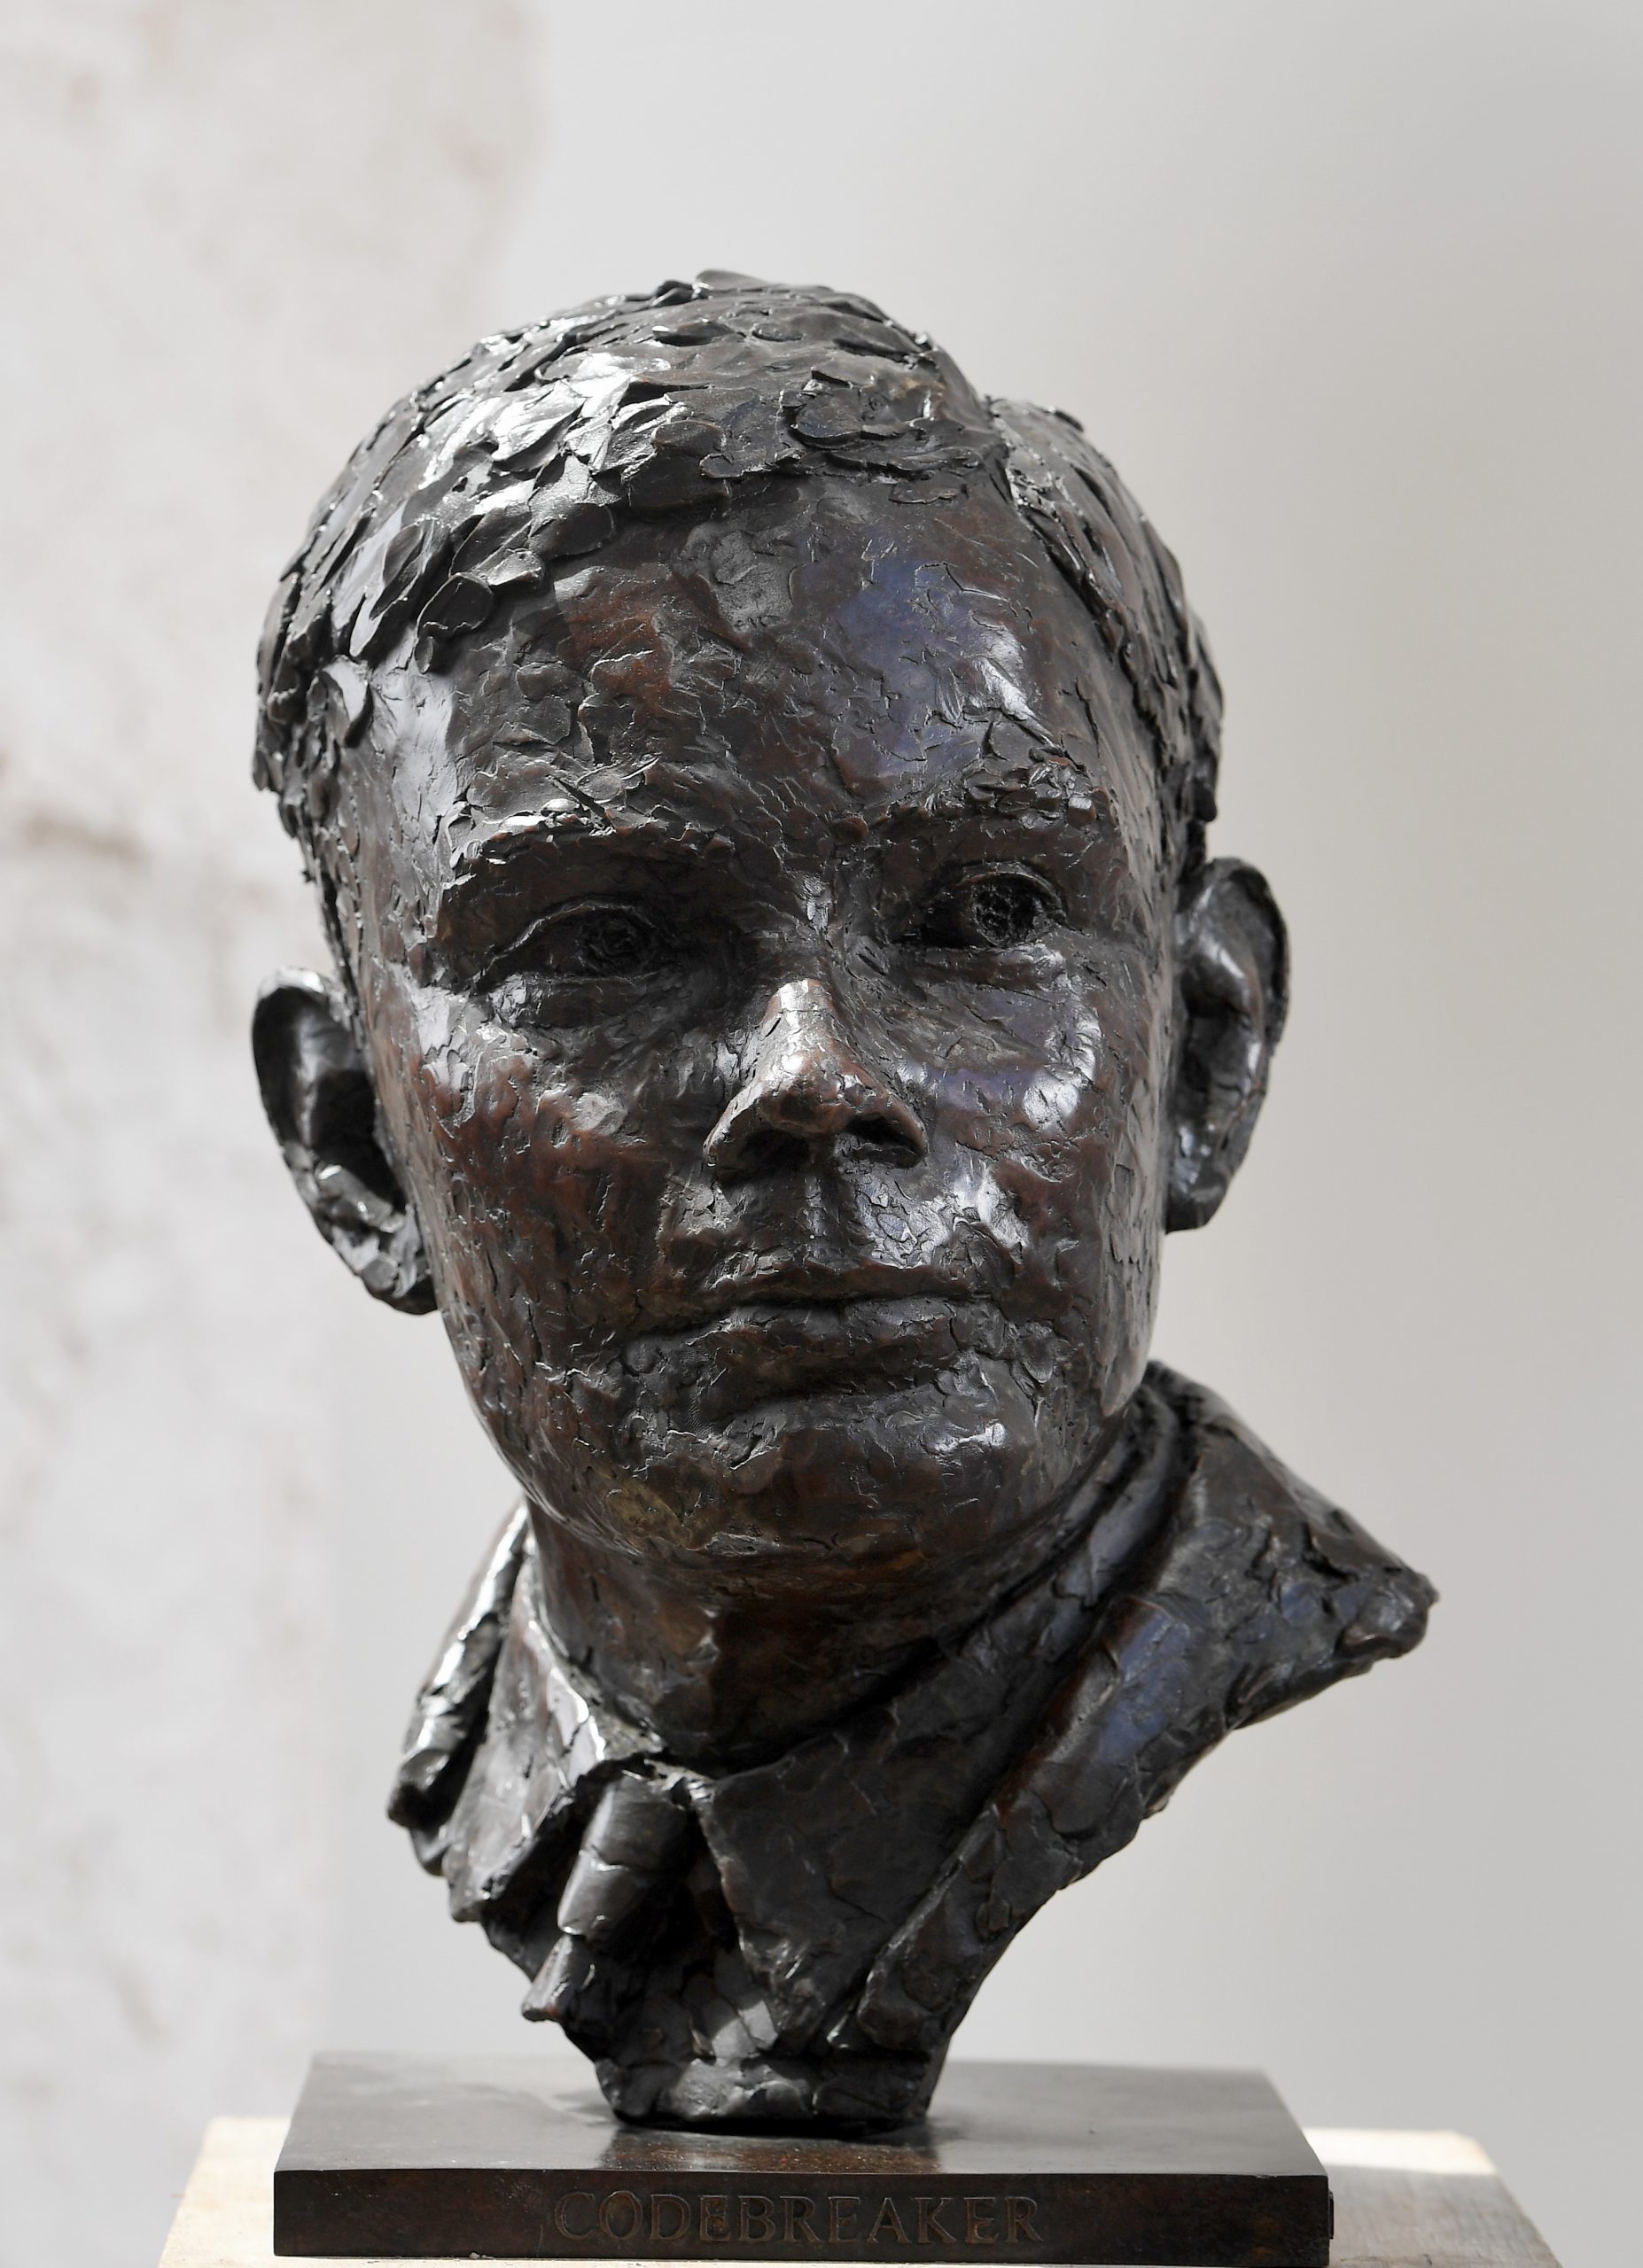 Alan Turing
by David Williams-Ellis